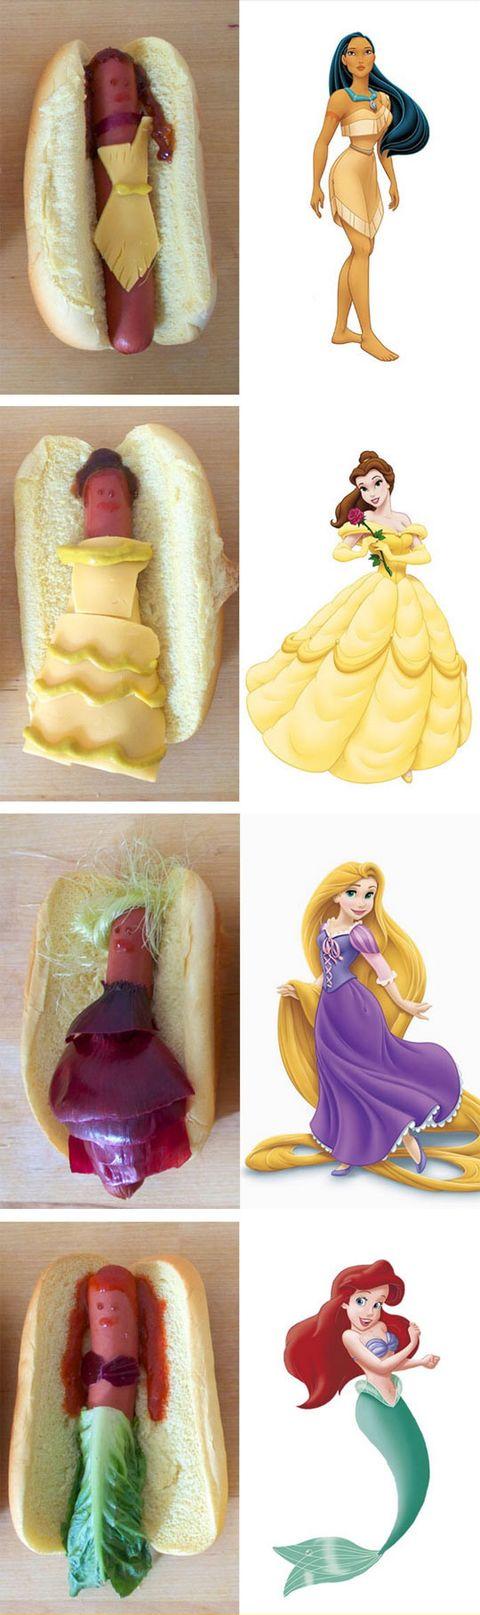 Disney+princesses+as+hot+dogs